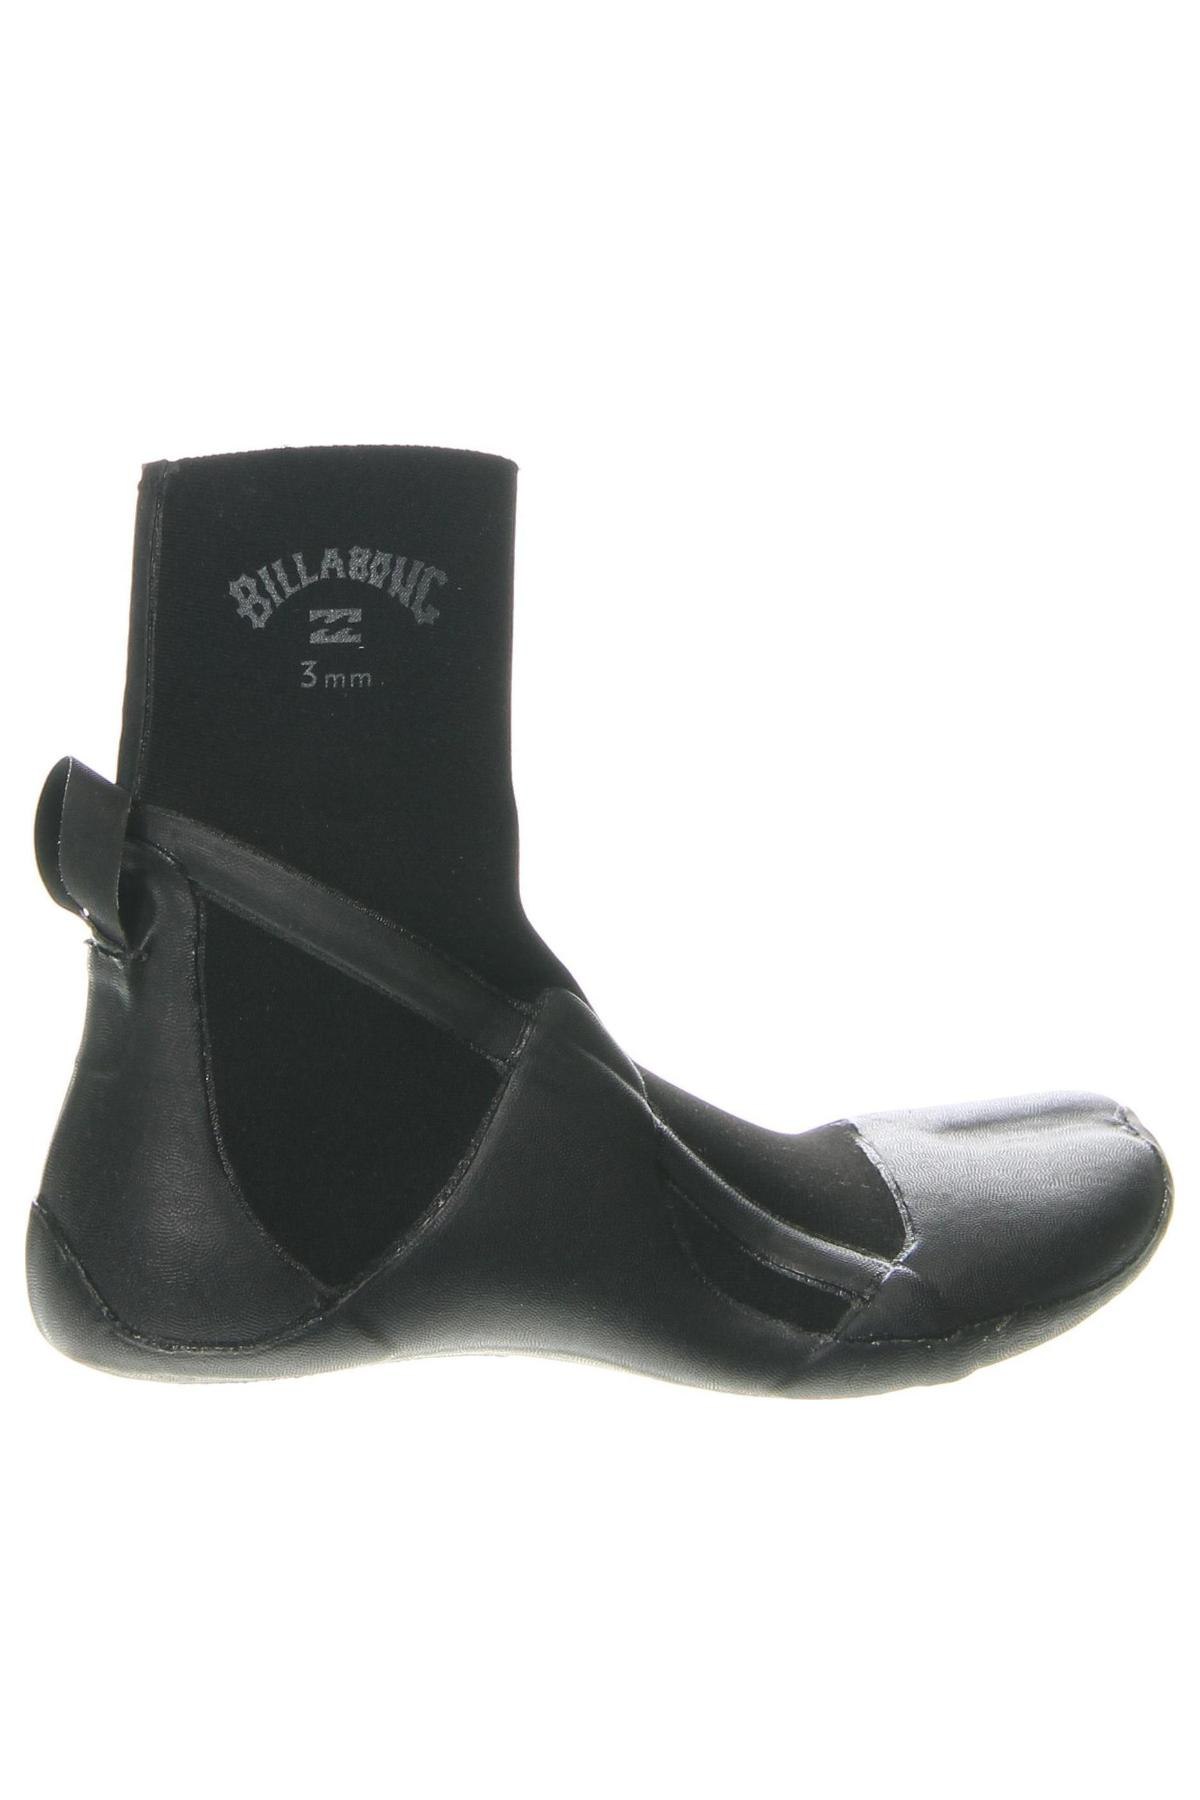 Παπούτσια Billabong, Μέγεθος 38, Χρώμα Μαύρο, Τιμή 25,05 €